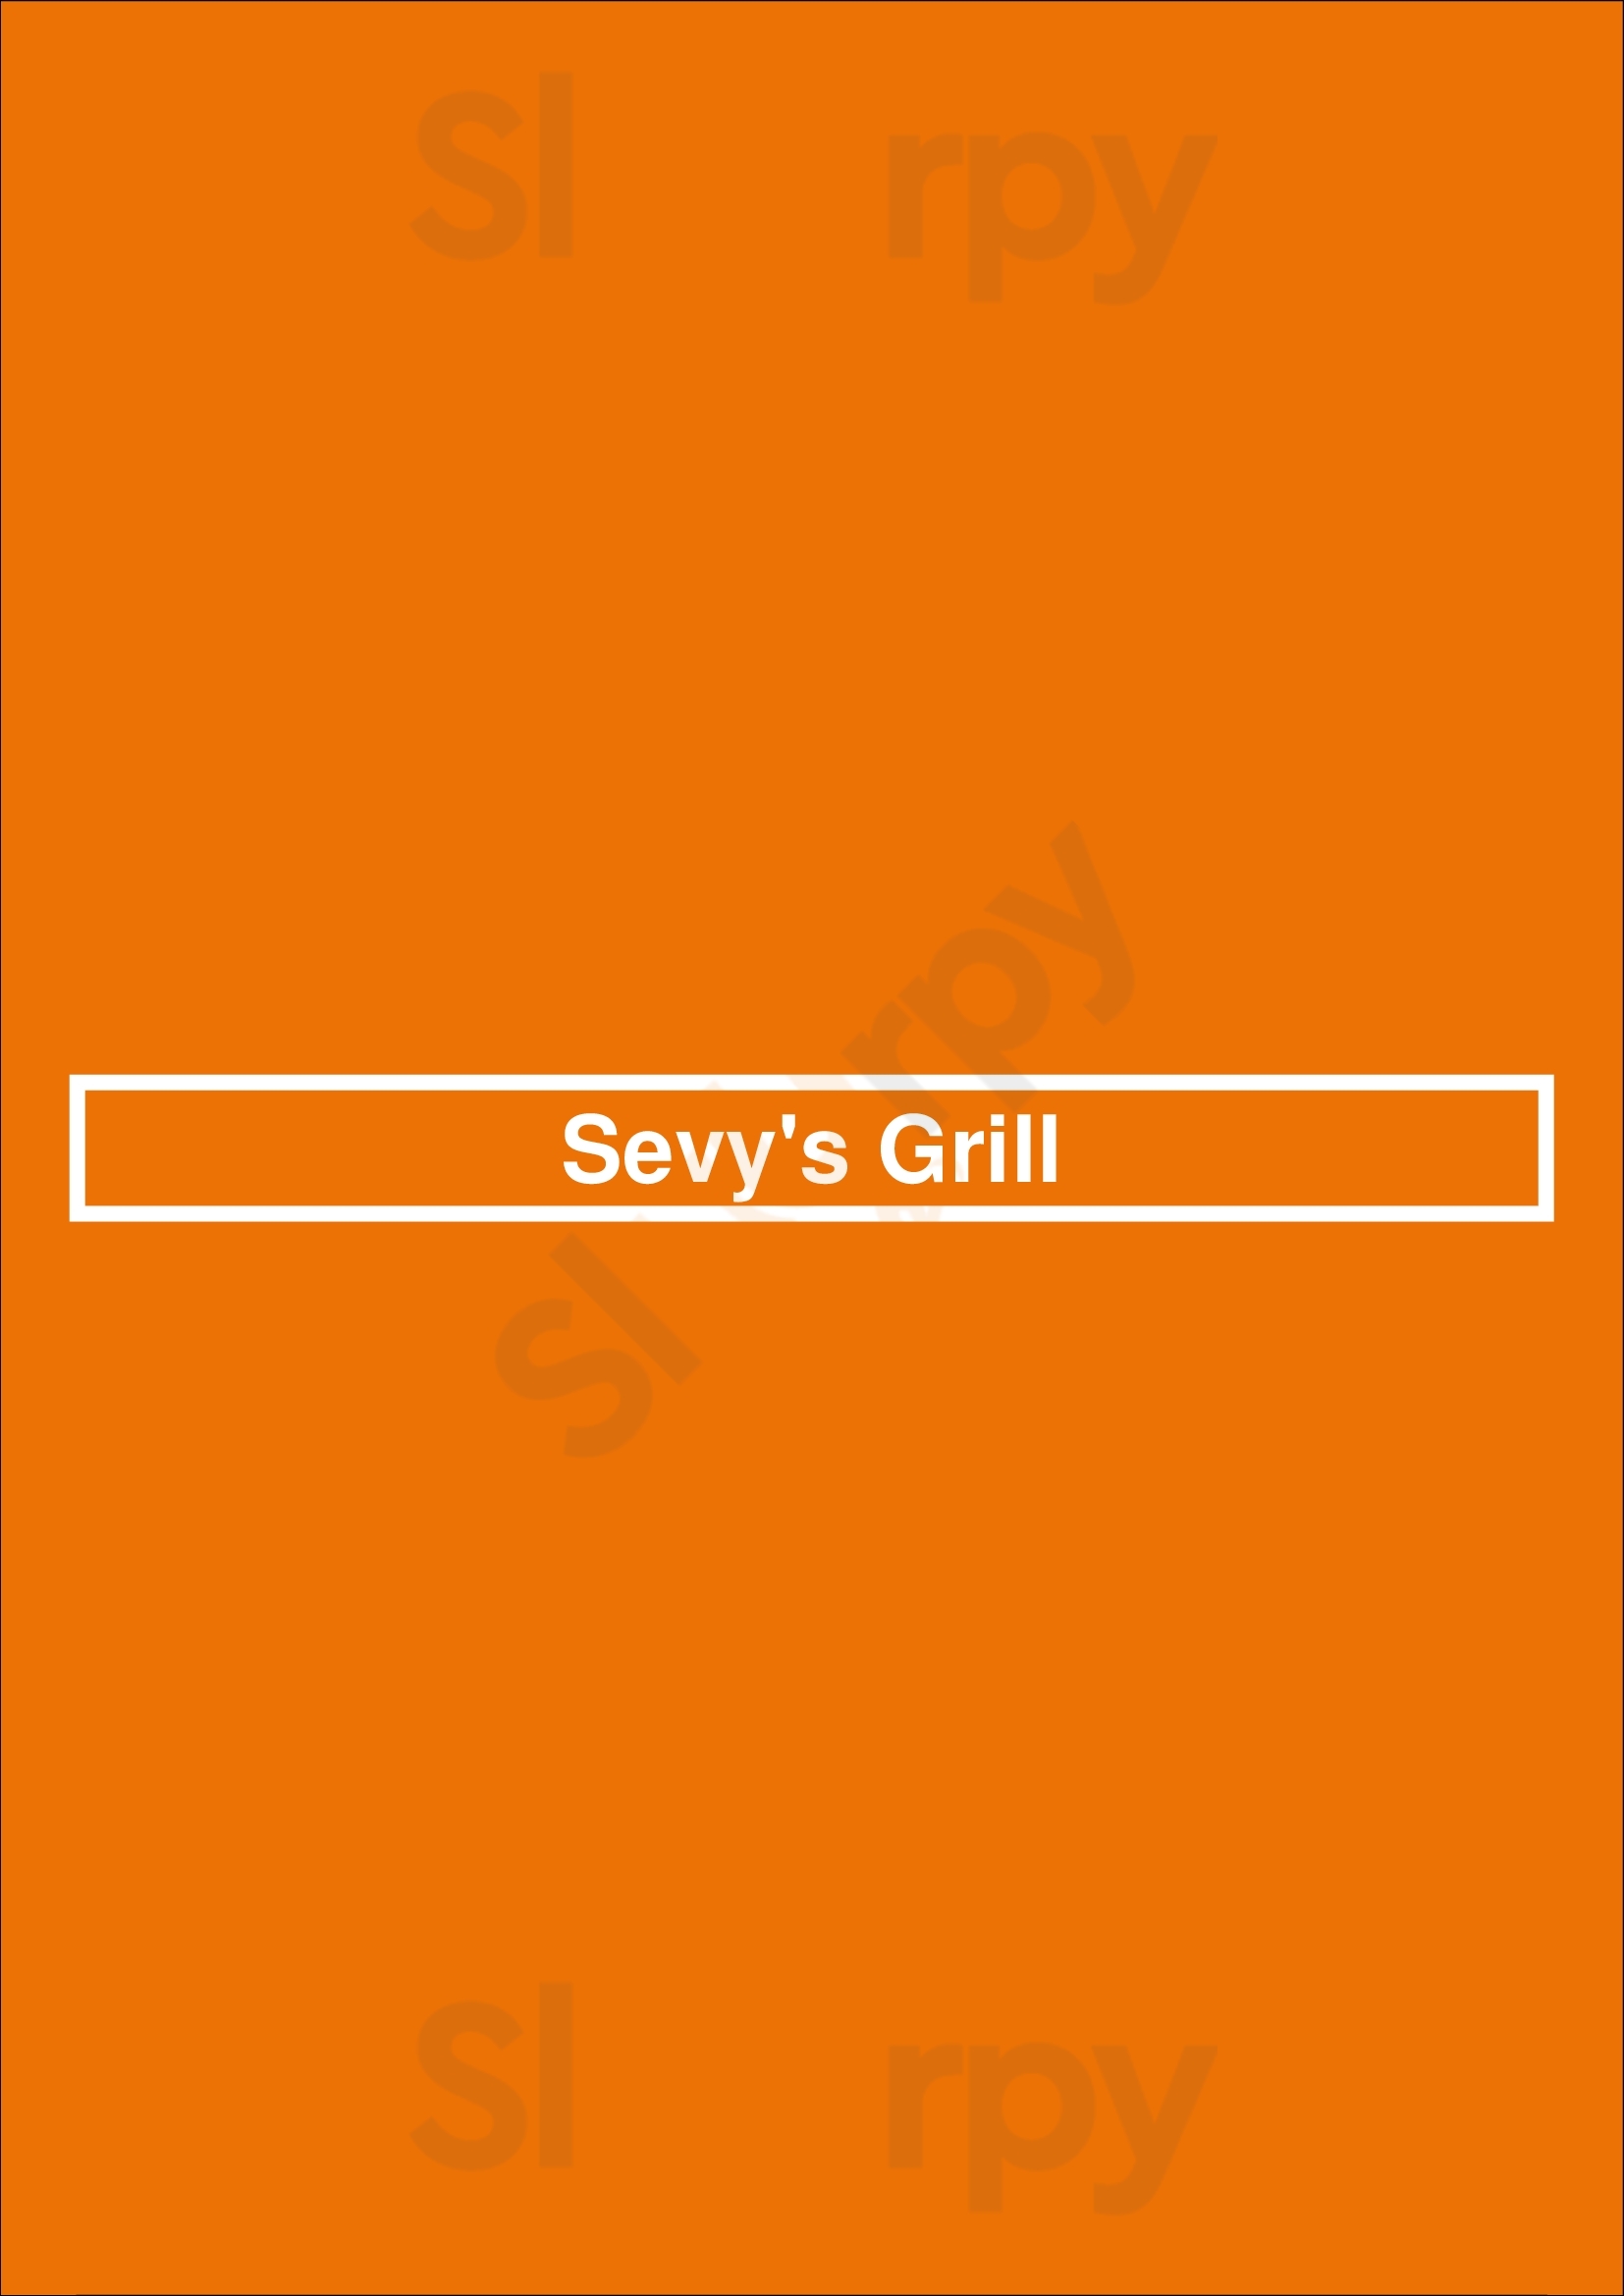 Sevy's Grill Dallas Menu - 1